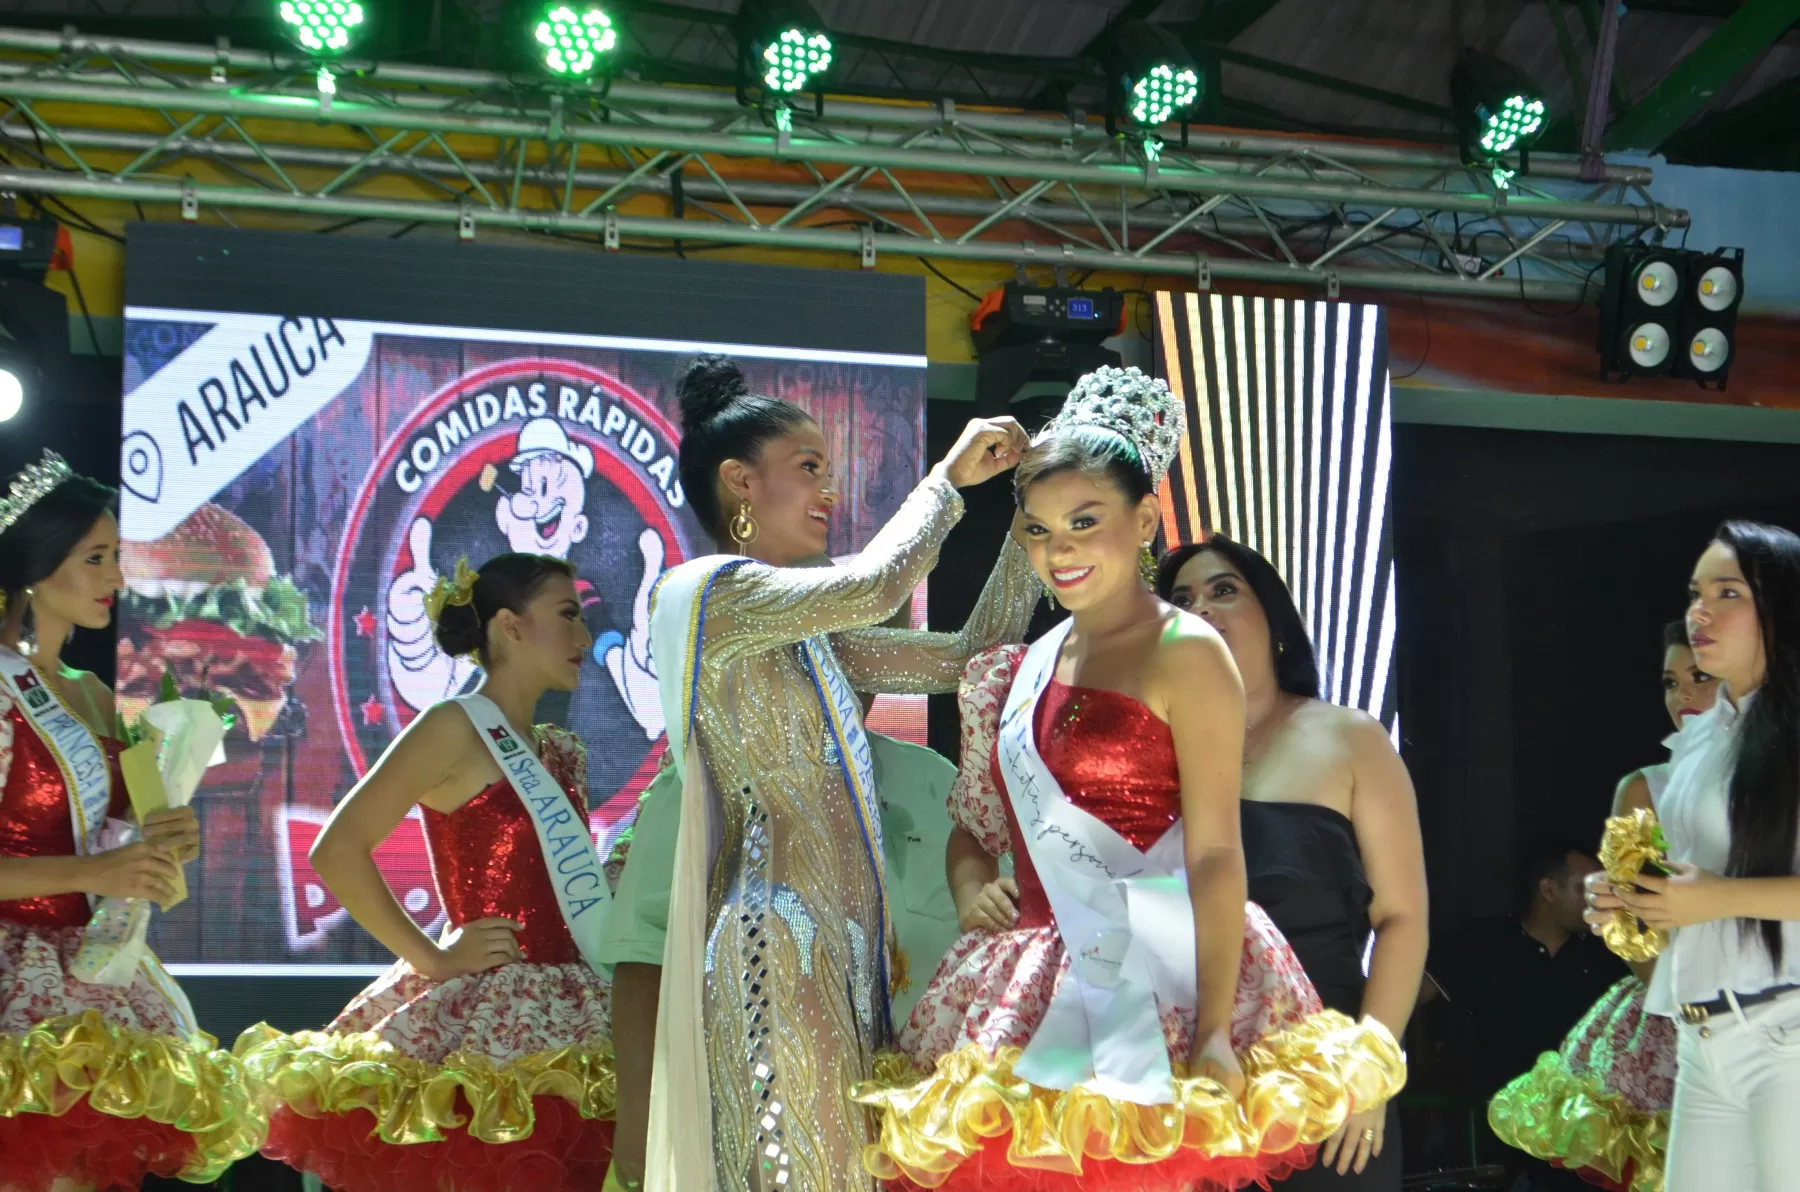 María Camila Chacón Rivera de Meta, Colombia fue coronada como reina internacional del Joropo en el marco del Festival Araucano de la Frontera 2019.